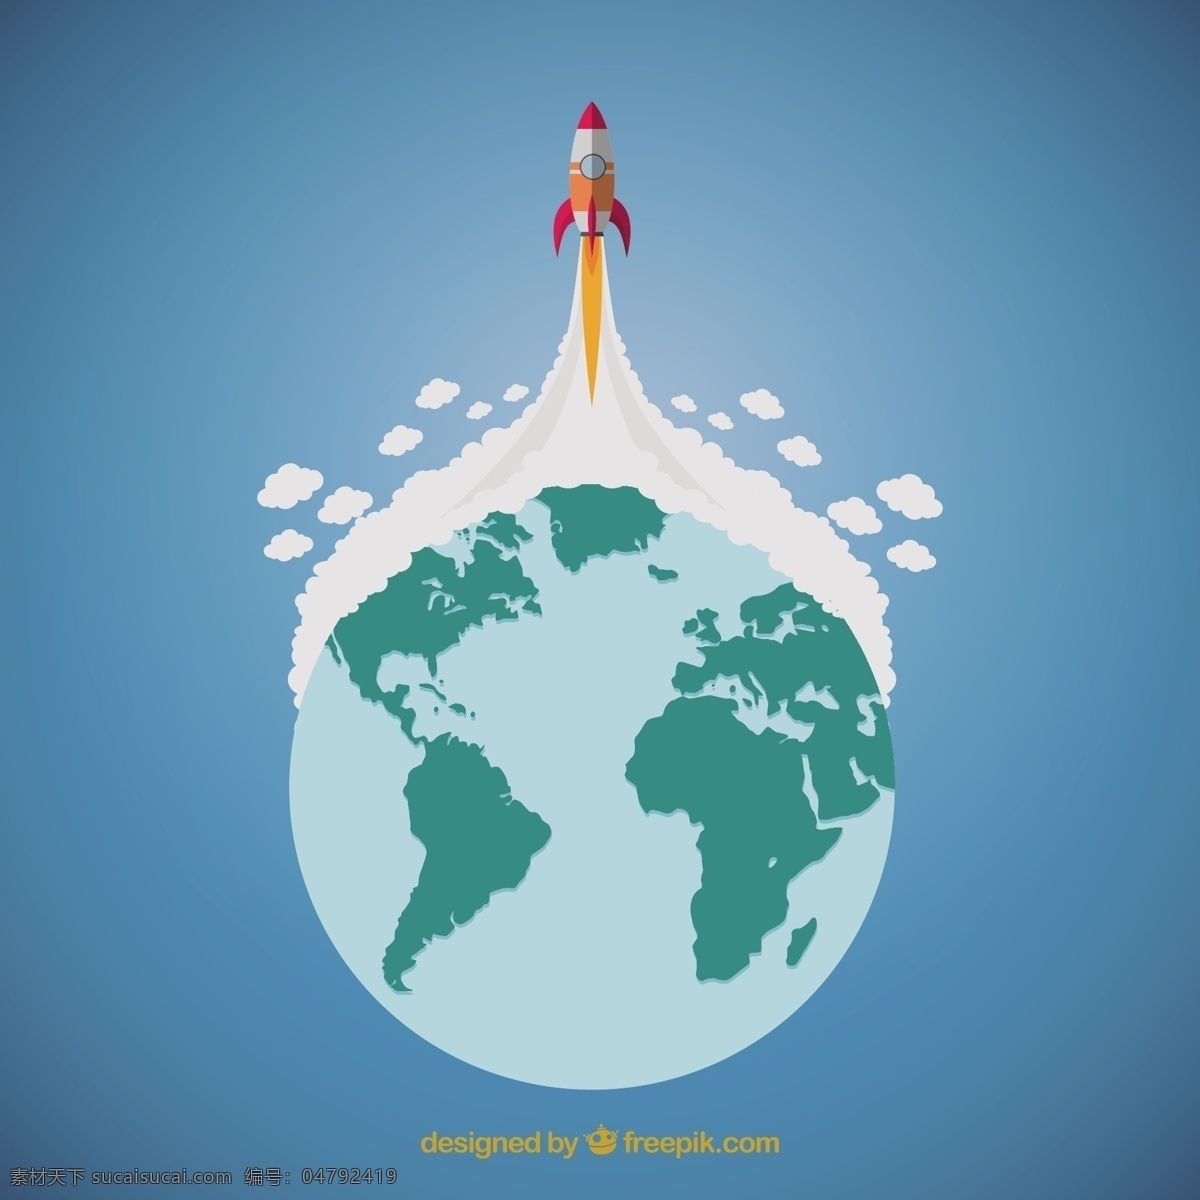 火箭发射 世界 地球 航天 船舶 火箭 发射 图标 高清 源文件